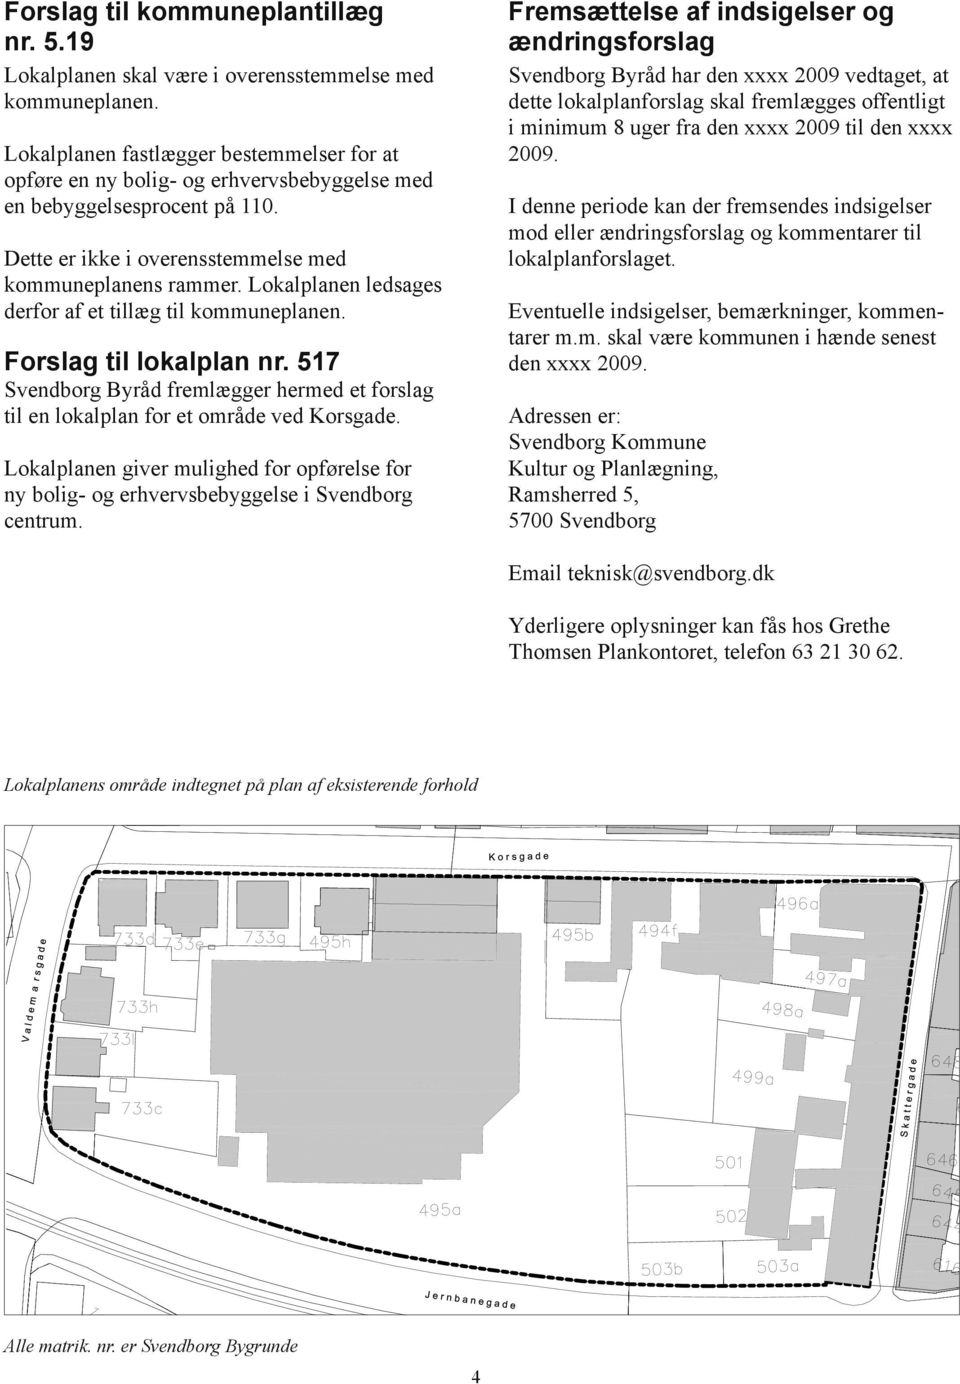 Lokalplanen ledsages derfor af et tillæg til kommuneplanen. Forslag til lokalplan nr. 517 Svendborg Byråd fremlægger hermed et forslag til en lokalplan for et område ved Korsgade.